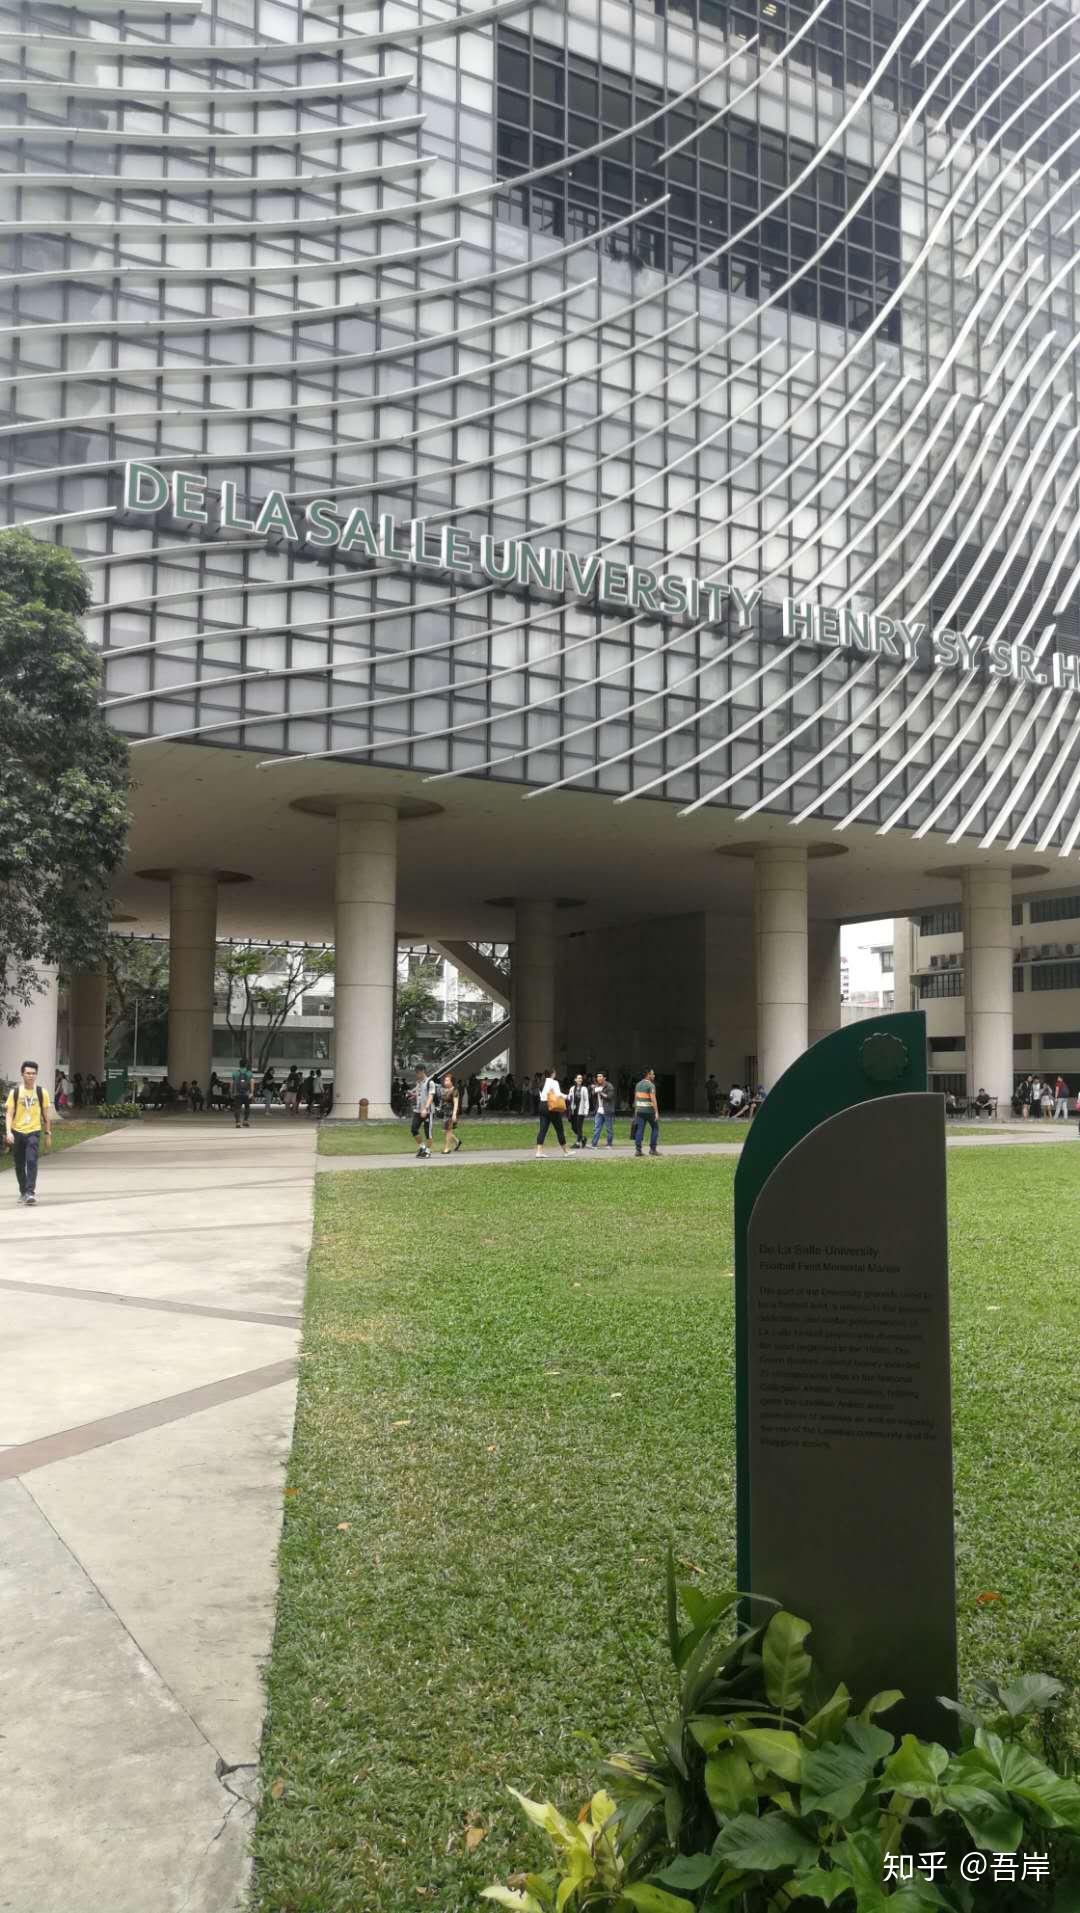 菲律宾德拉萨大学图片